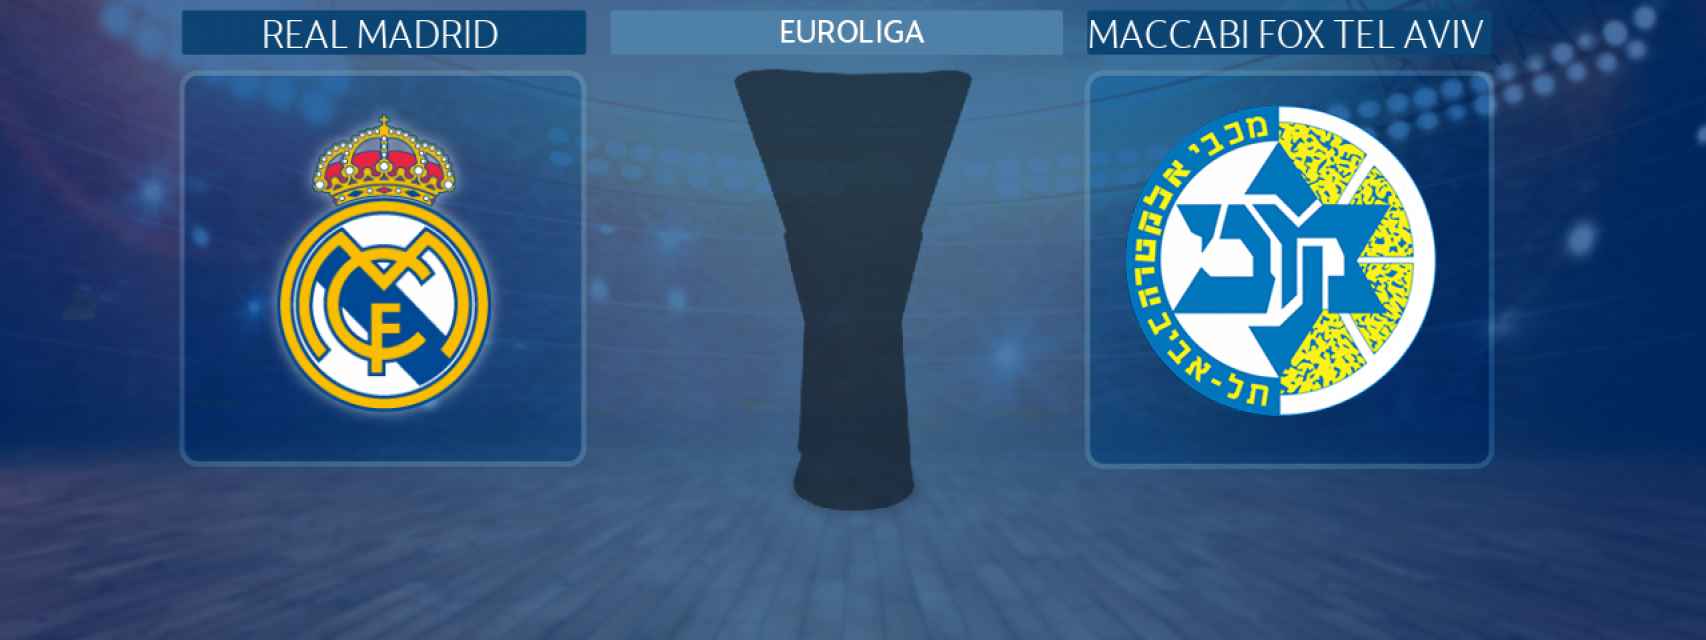 Real Madrid - Maccabi Fox Tel Aviv, partido de la Euroliga